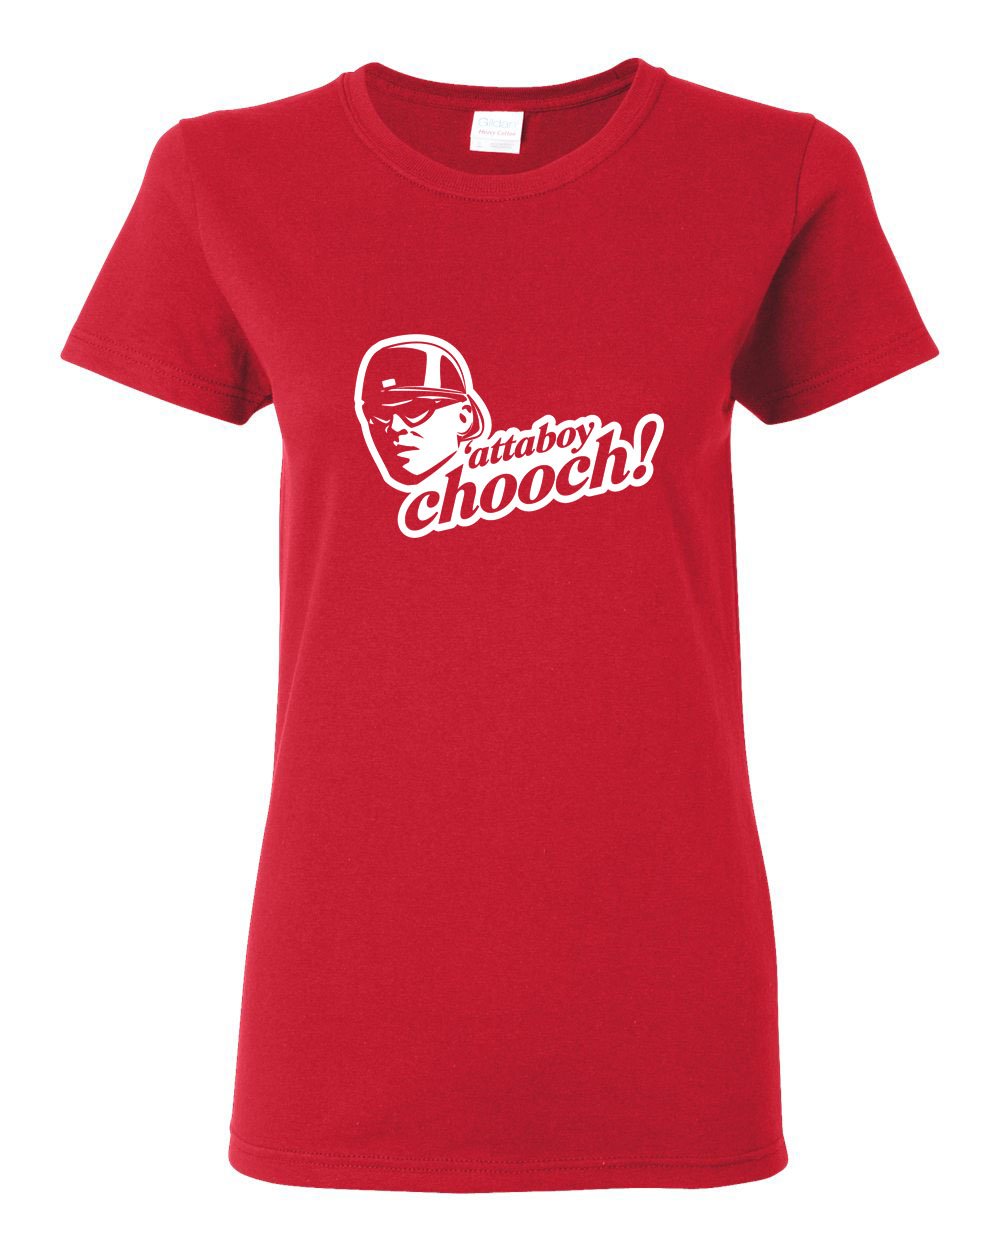 Attaboy Chooch LADIES Missy-Fit T-Shirt